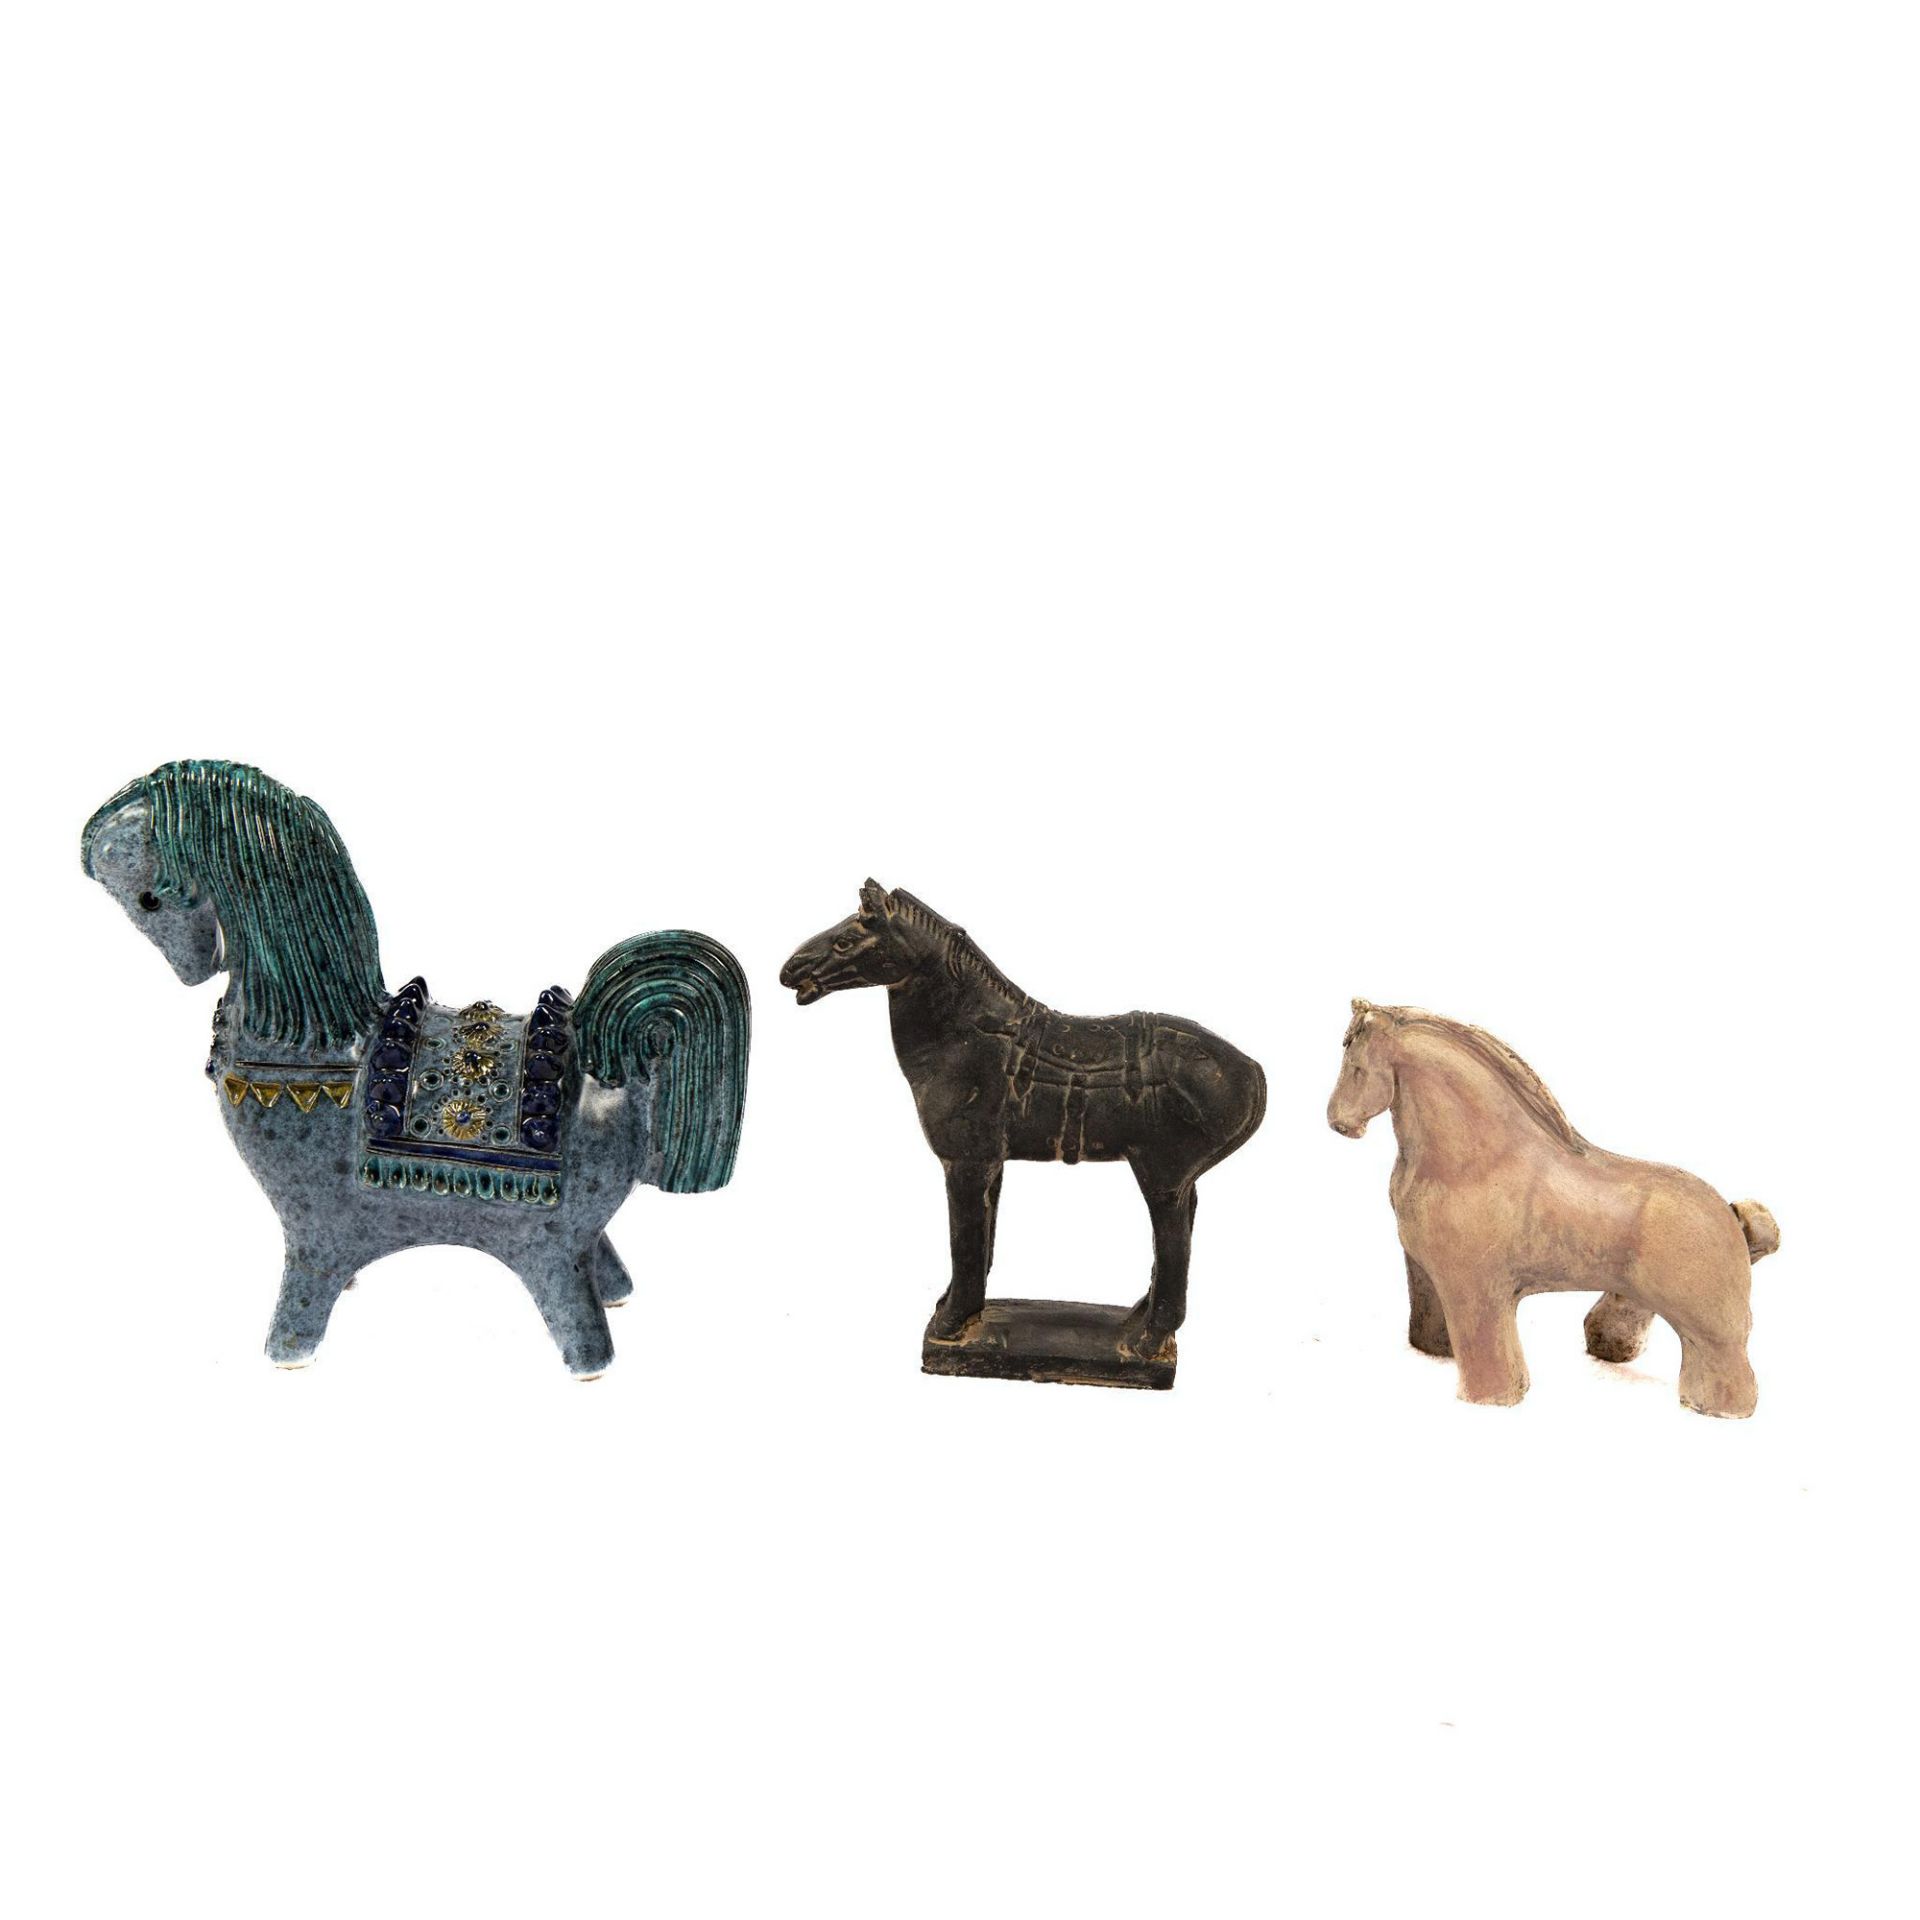 3pc Artistic Ceramic Horses - Image 2 of 4